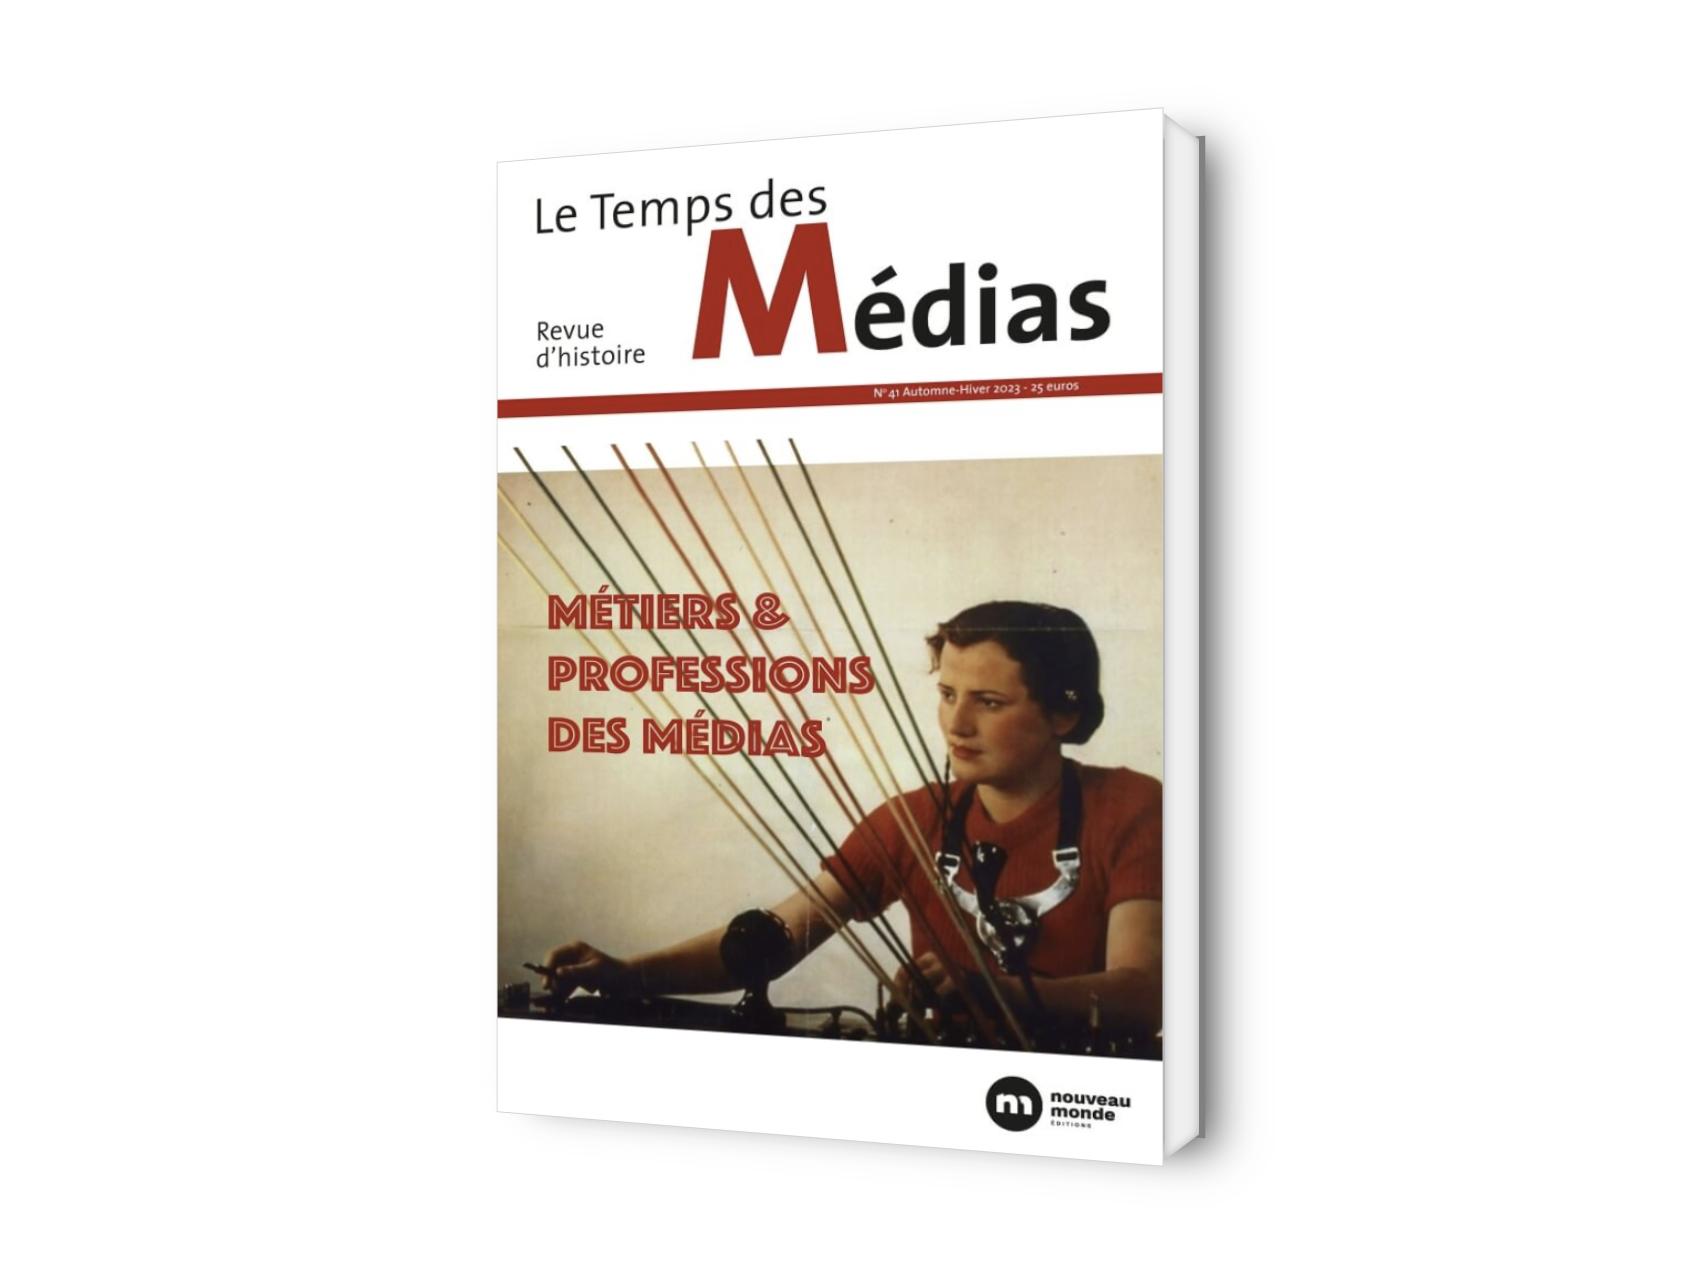 Le Temps des Médias: Métiers et professions des médias